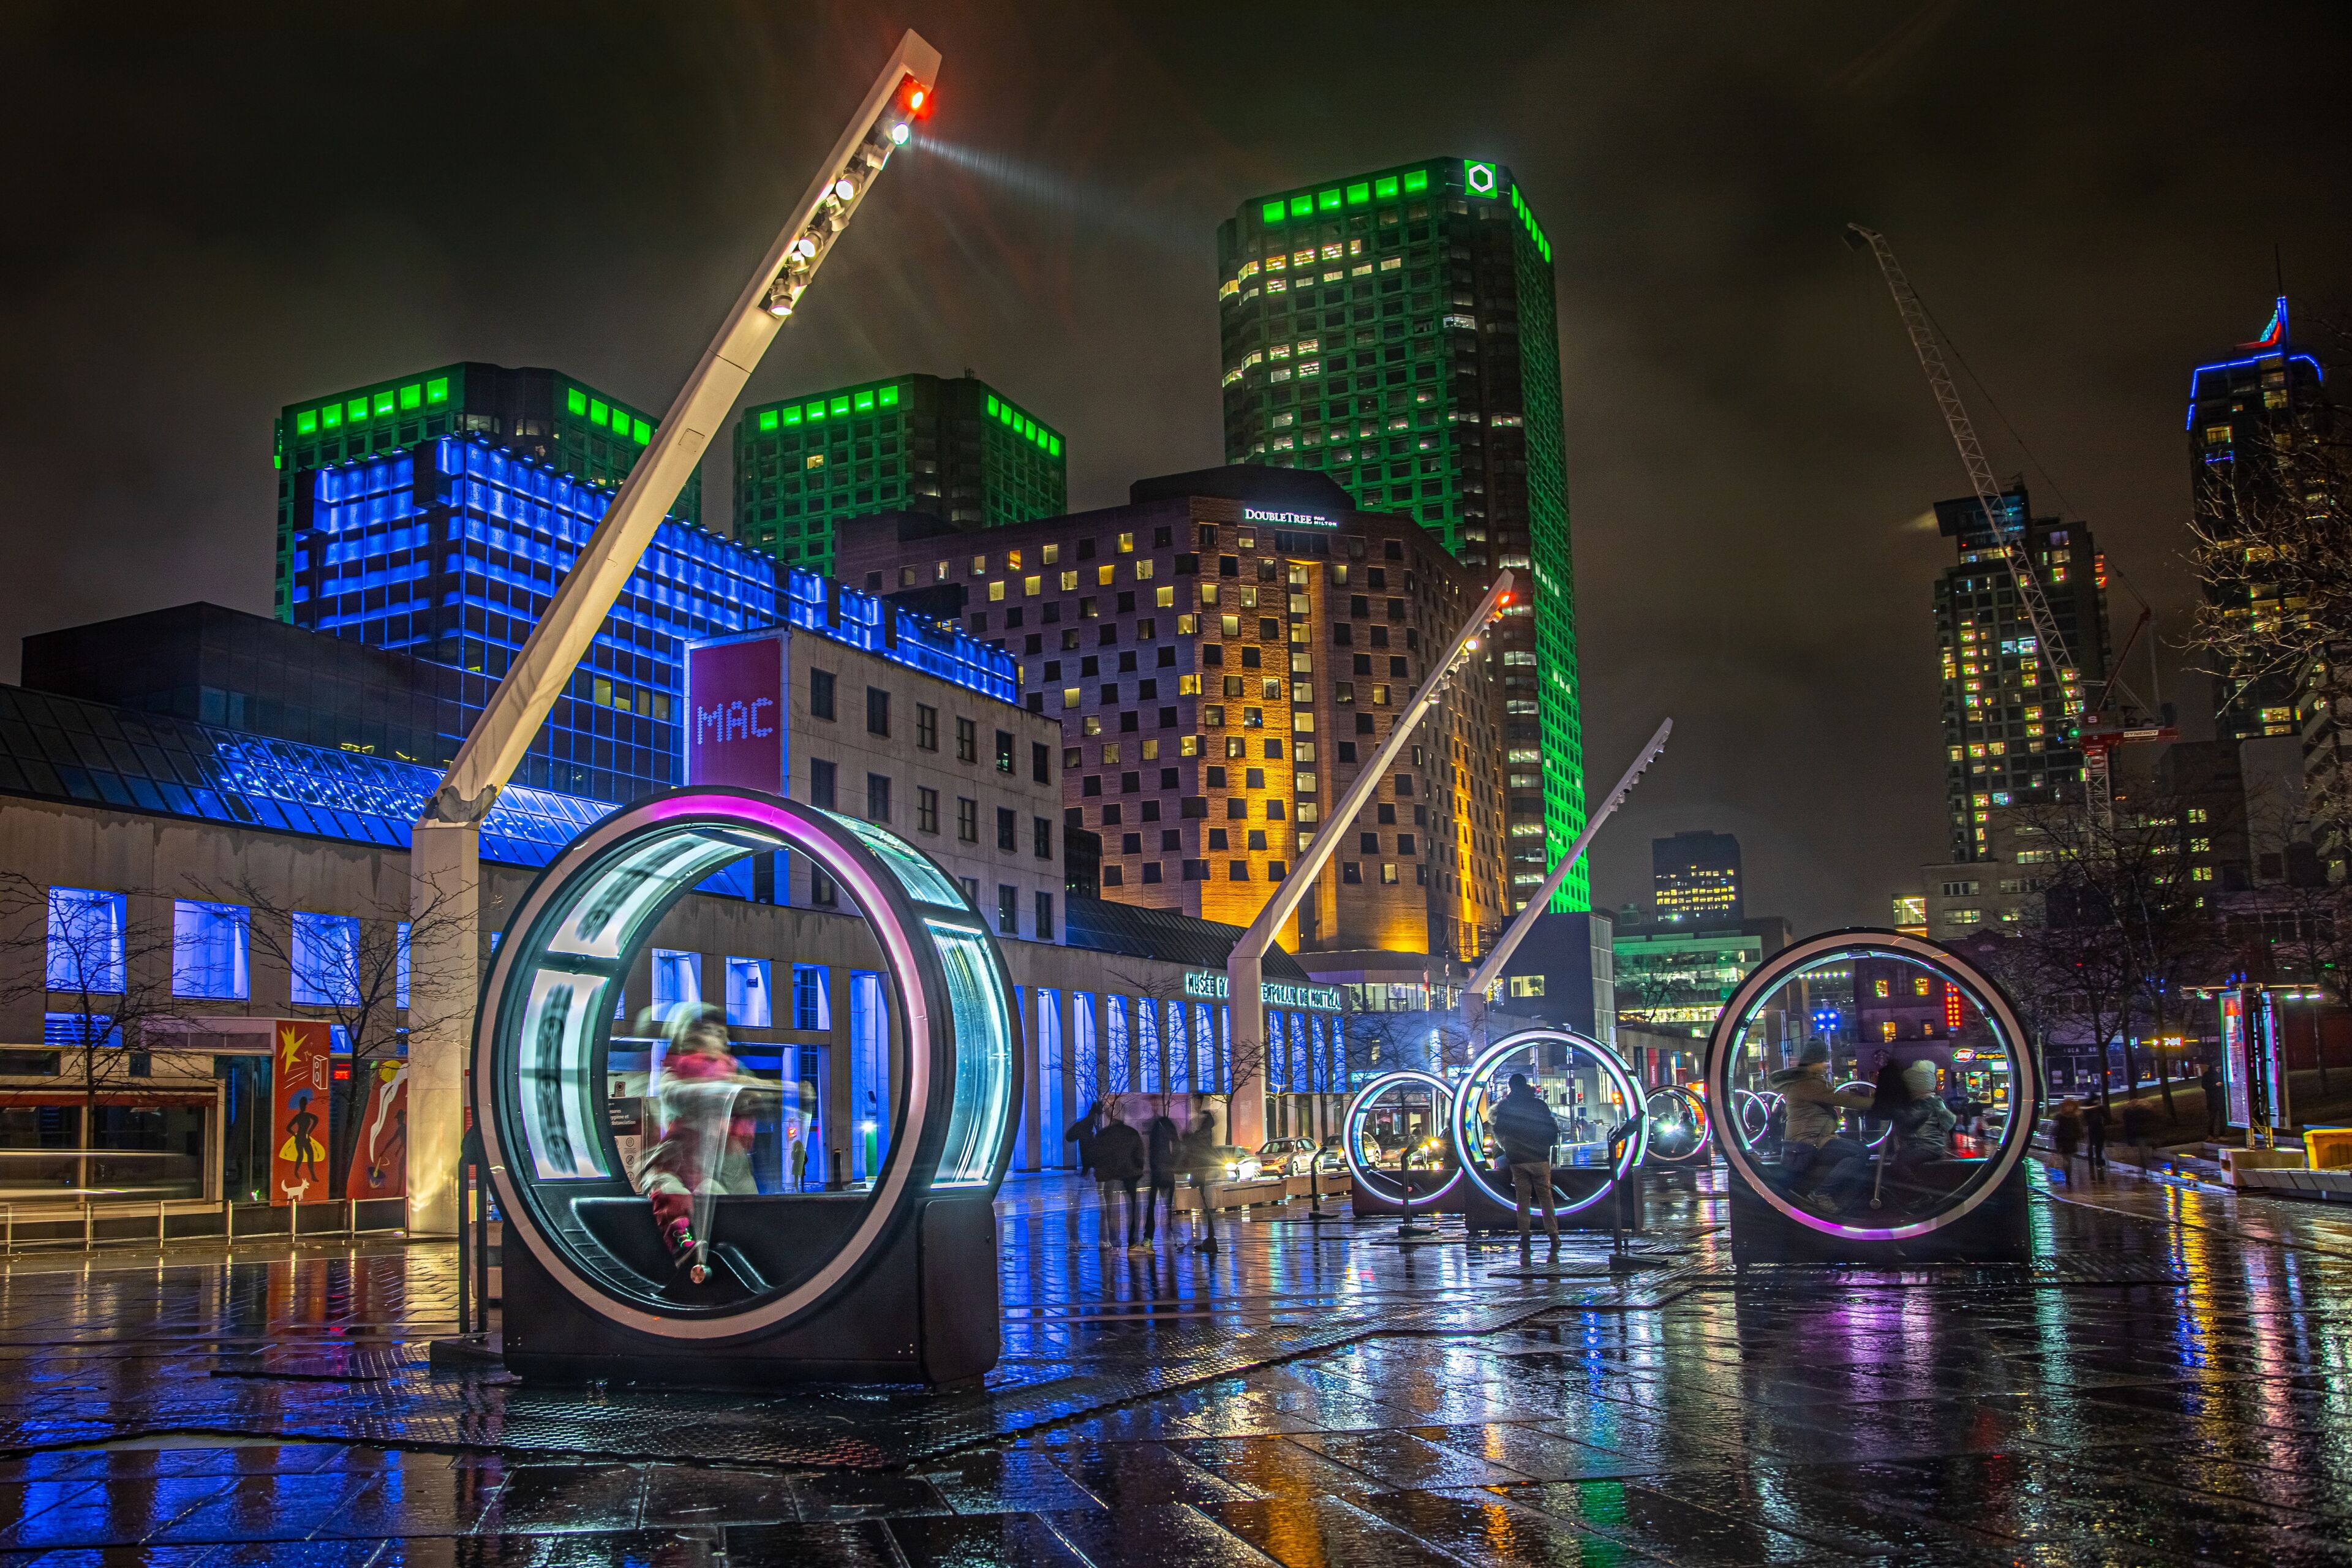 Un paysage urbain vibrant de nuit caractérisé par des installations lumineuses futuristes avec des pods circulaires illuminés à travers lesquels les gens peuvent marcher, sur fond de gratte-ciels brillamment éclairés.